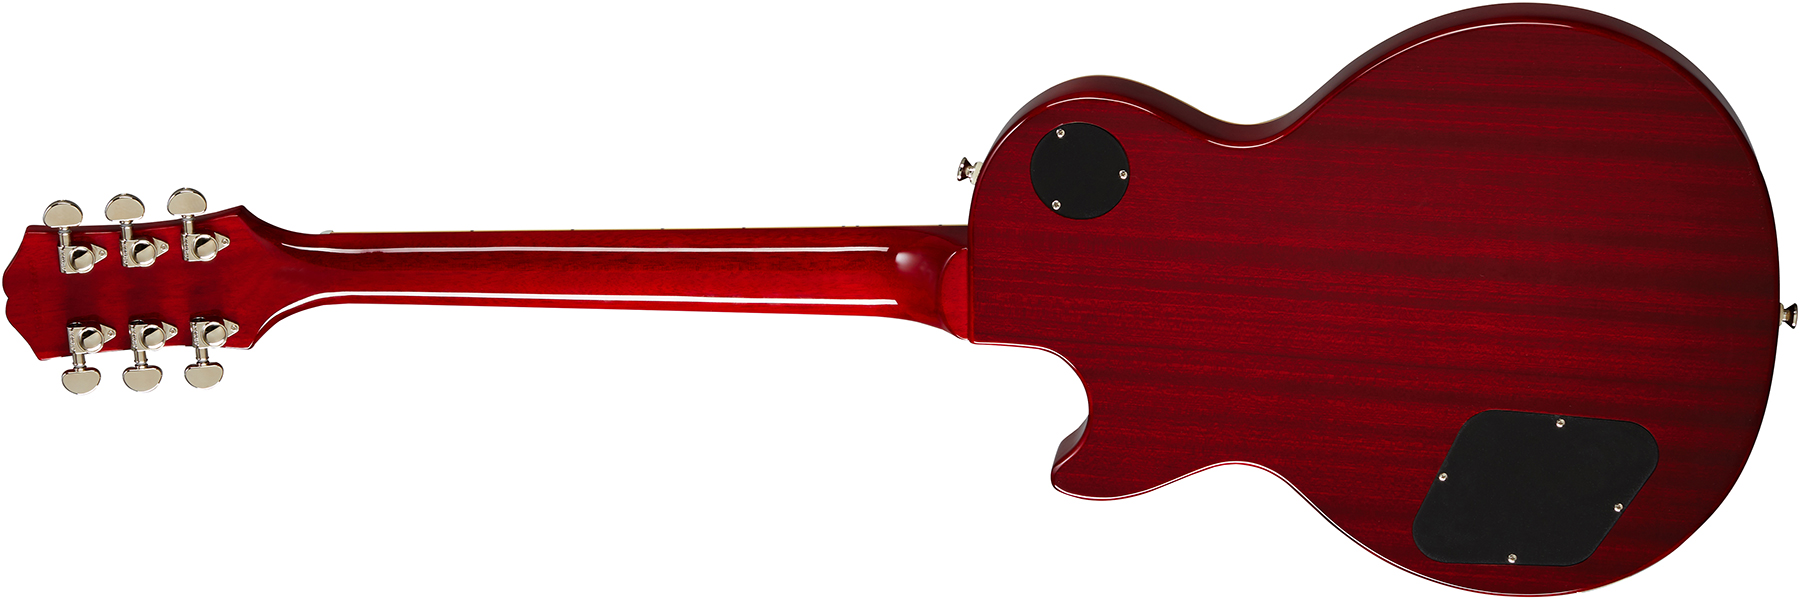 Epiphone Les Paul Classic Modern 2020 2h Ht Lau - Heritage Cherry Sunburst - Guitarra eléctrica de corte único. - Variation 1